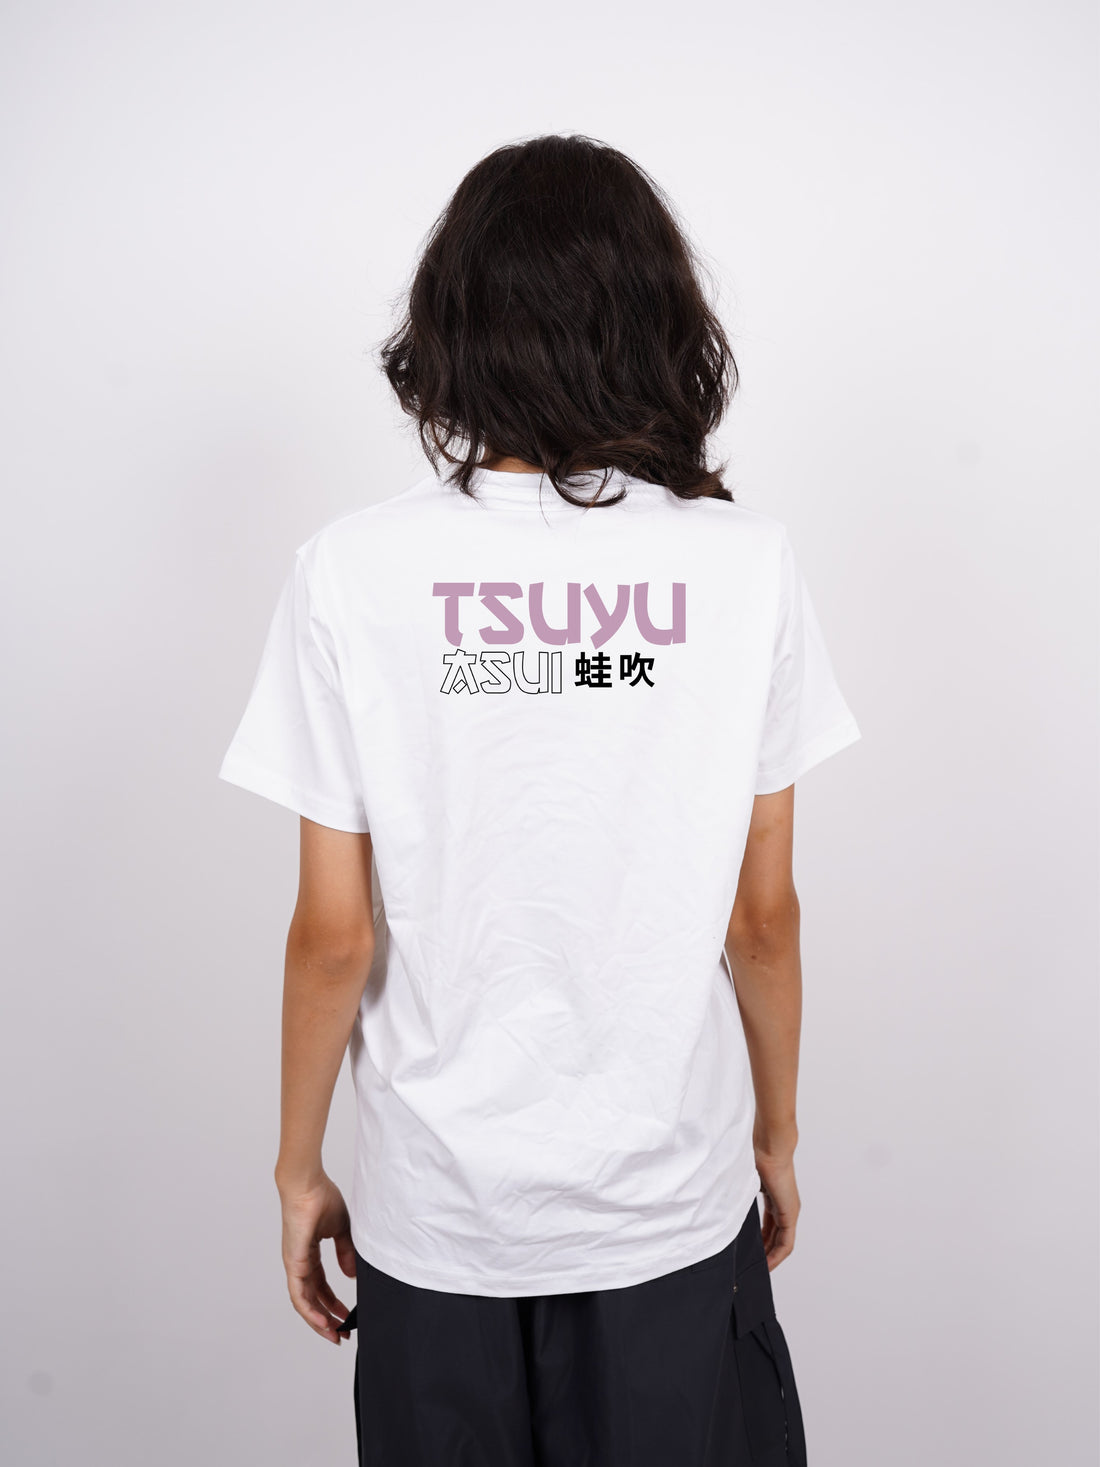 Tsuya Asui - My Hero Academia Regular Tee For Men and Women